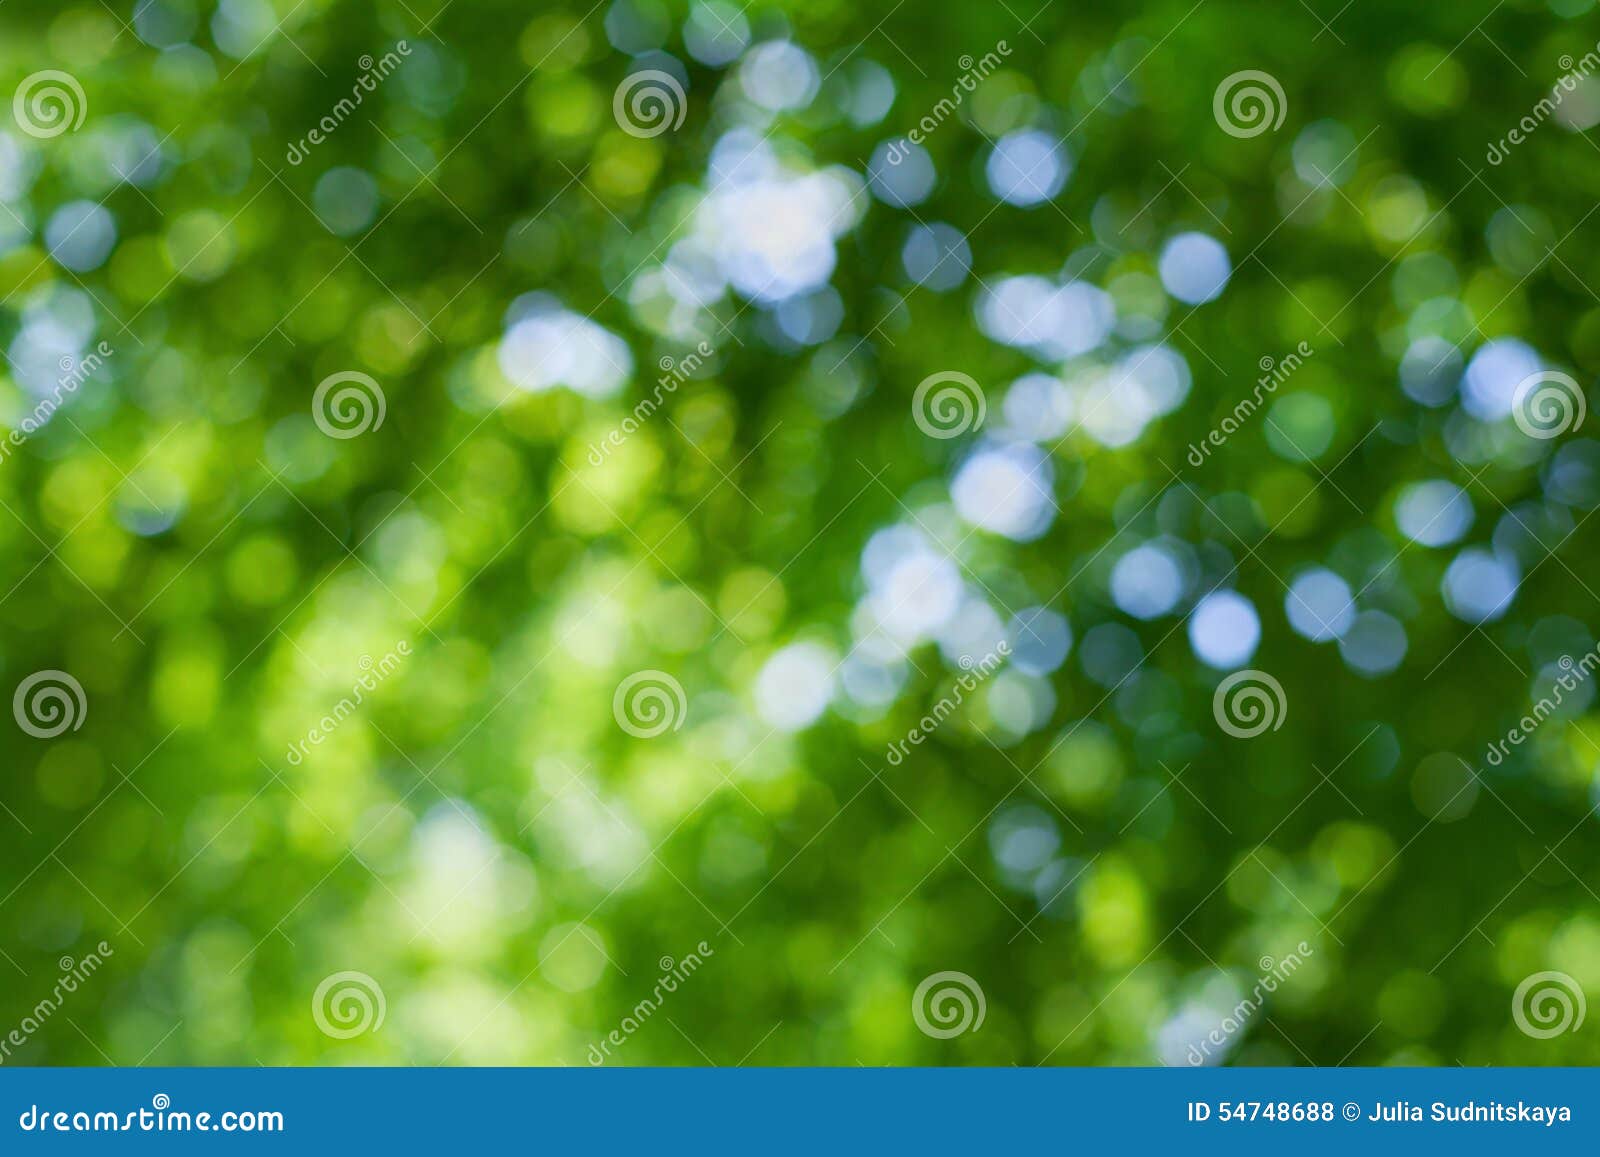 Hãy chiêm ngưỡng một cảnh vật xanh tươi lá rực rỡ nhưng lại gợi cảm nhờ phần nền xanh lá defocused, tạo nên một không gian mộng mơ đầy thư giãn và yên bình.